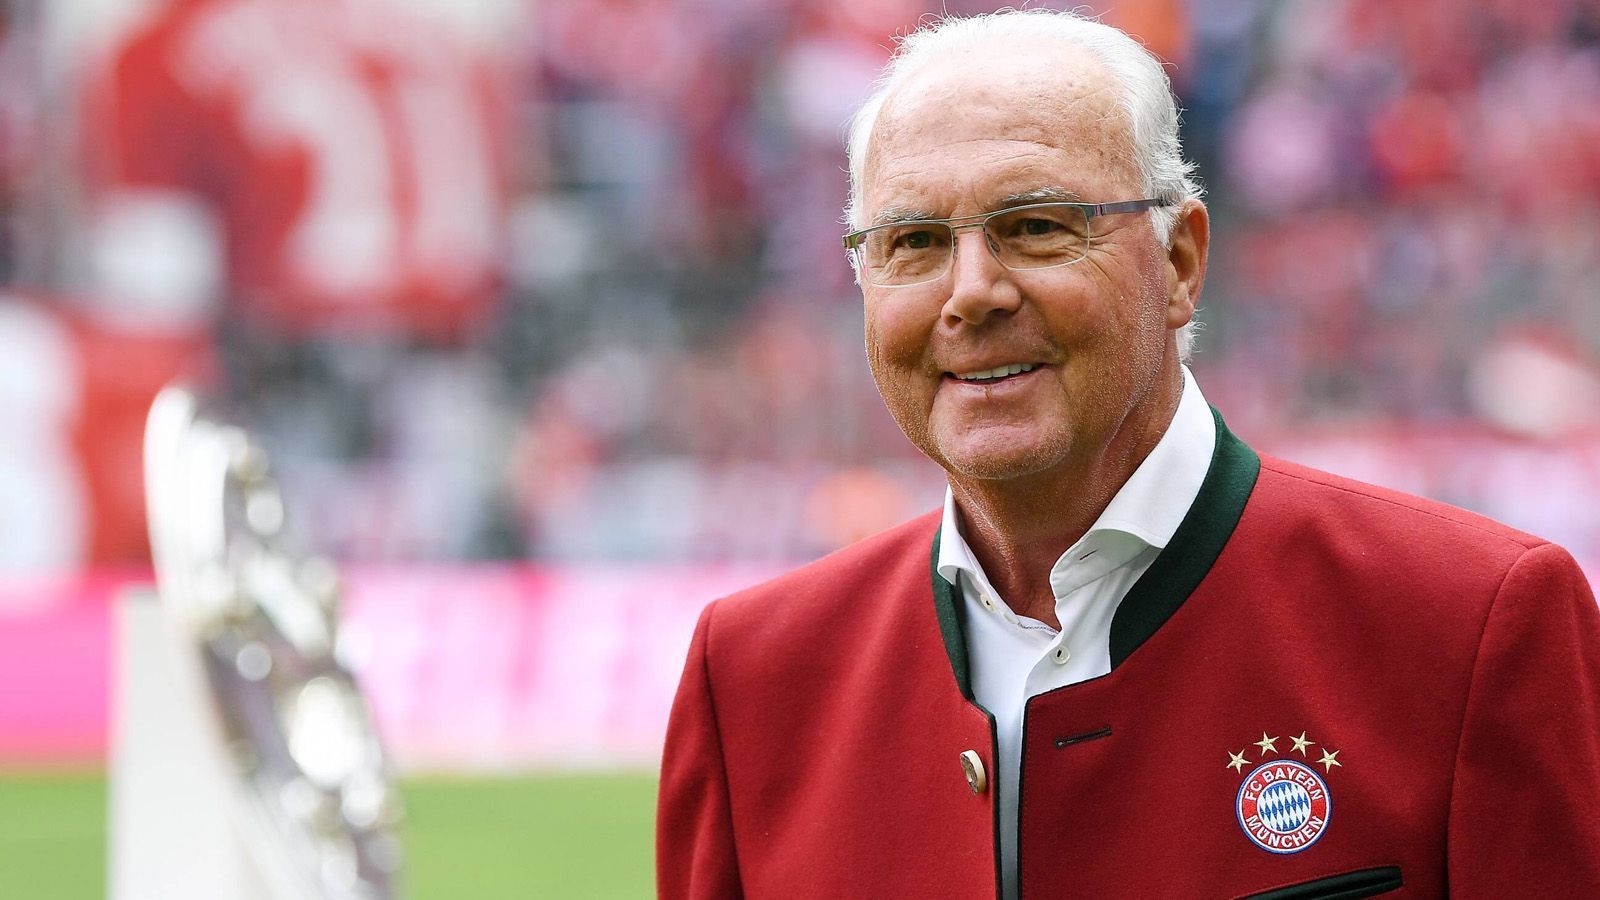 
                <strong>Franz Beckenbauer</strong><br>
                Position: Innenverteidiger, damals LiberoUmgerechneter Marktwert: 190 Millionen EuroBeim FC Bayern aktiv: Von 1965 bis 1977Bewertete Saison: 1973/74 (28 Jahre)
              